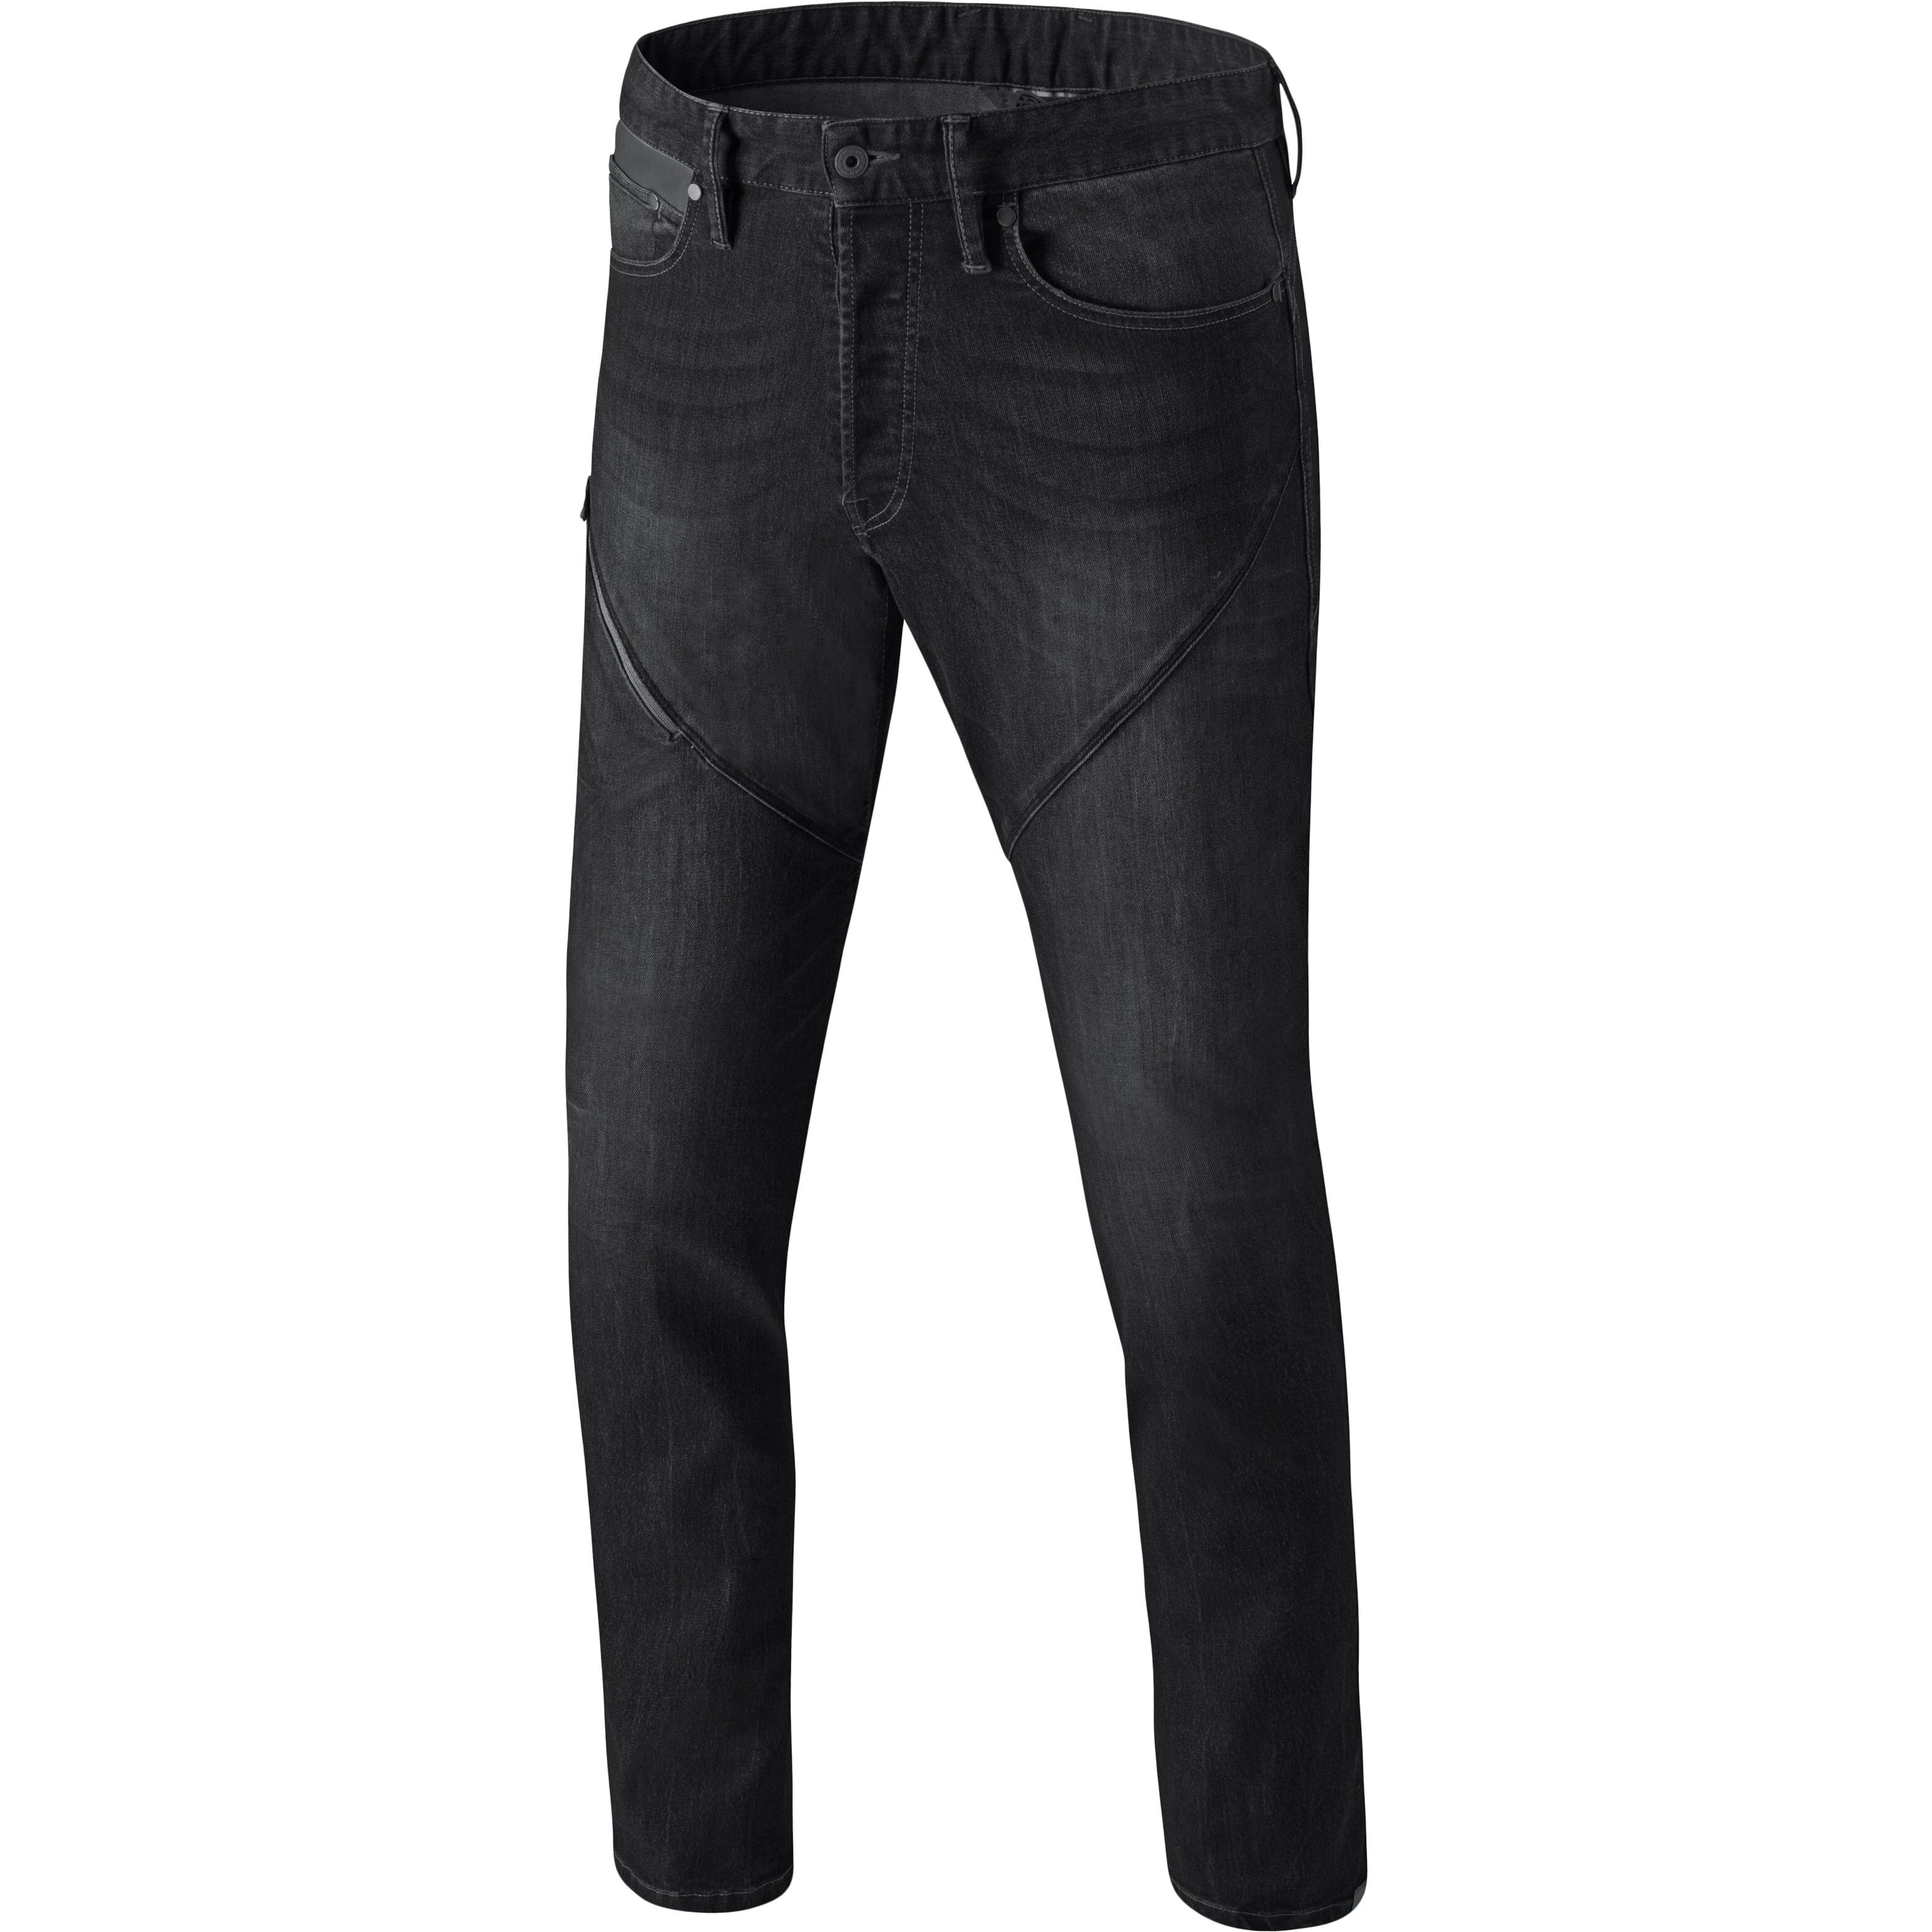 Dynafit - 24/7 M Jeans - Jeans - Men's